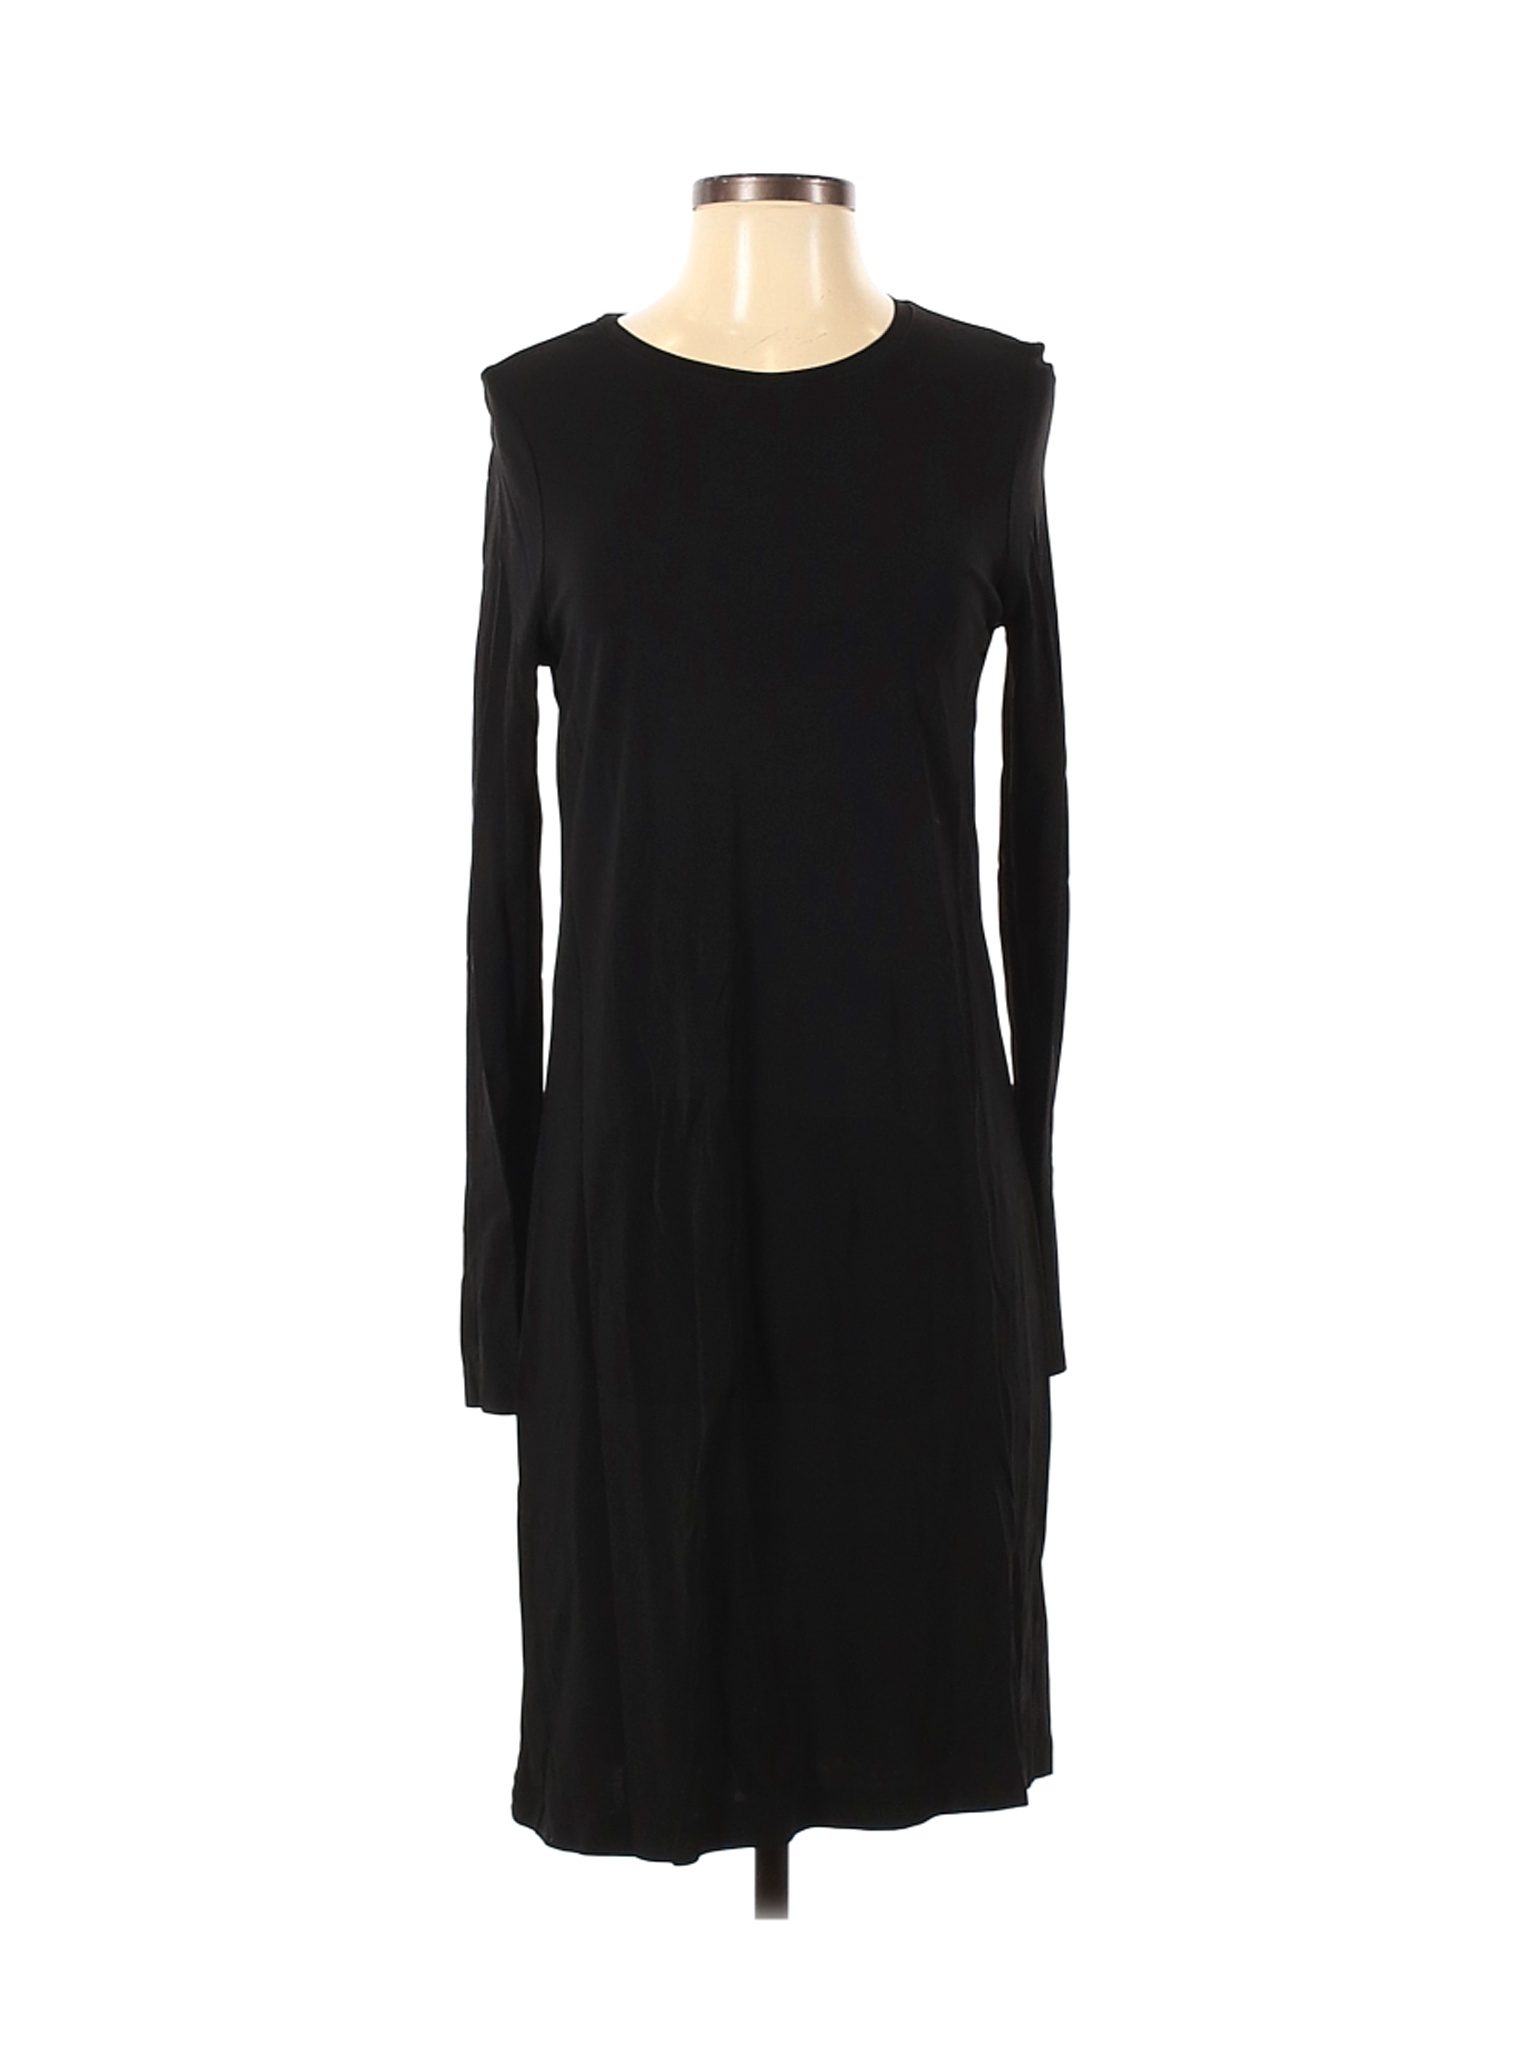 Wilfred Women Black Casual Dress S | eBay